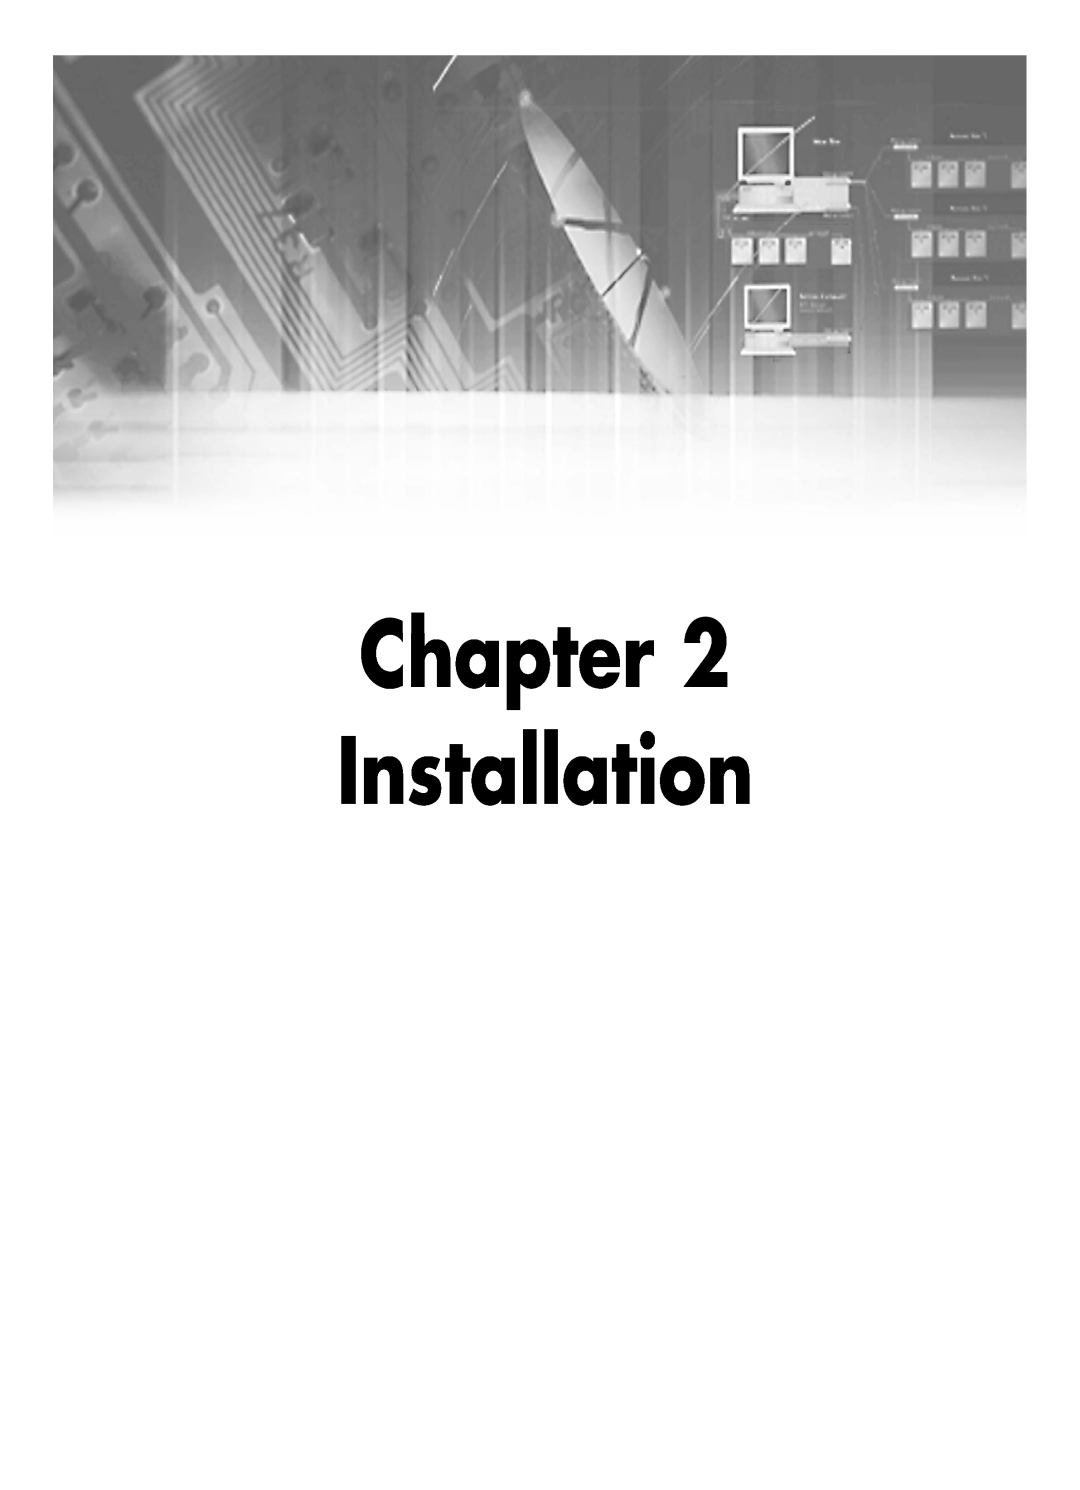 Samsung SHR-2040P250, SHR-2042P250 manual Chapter Installation 